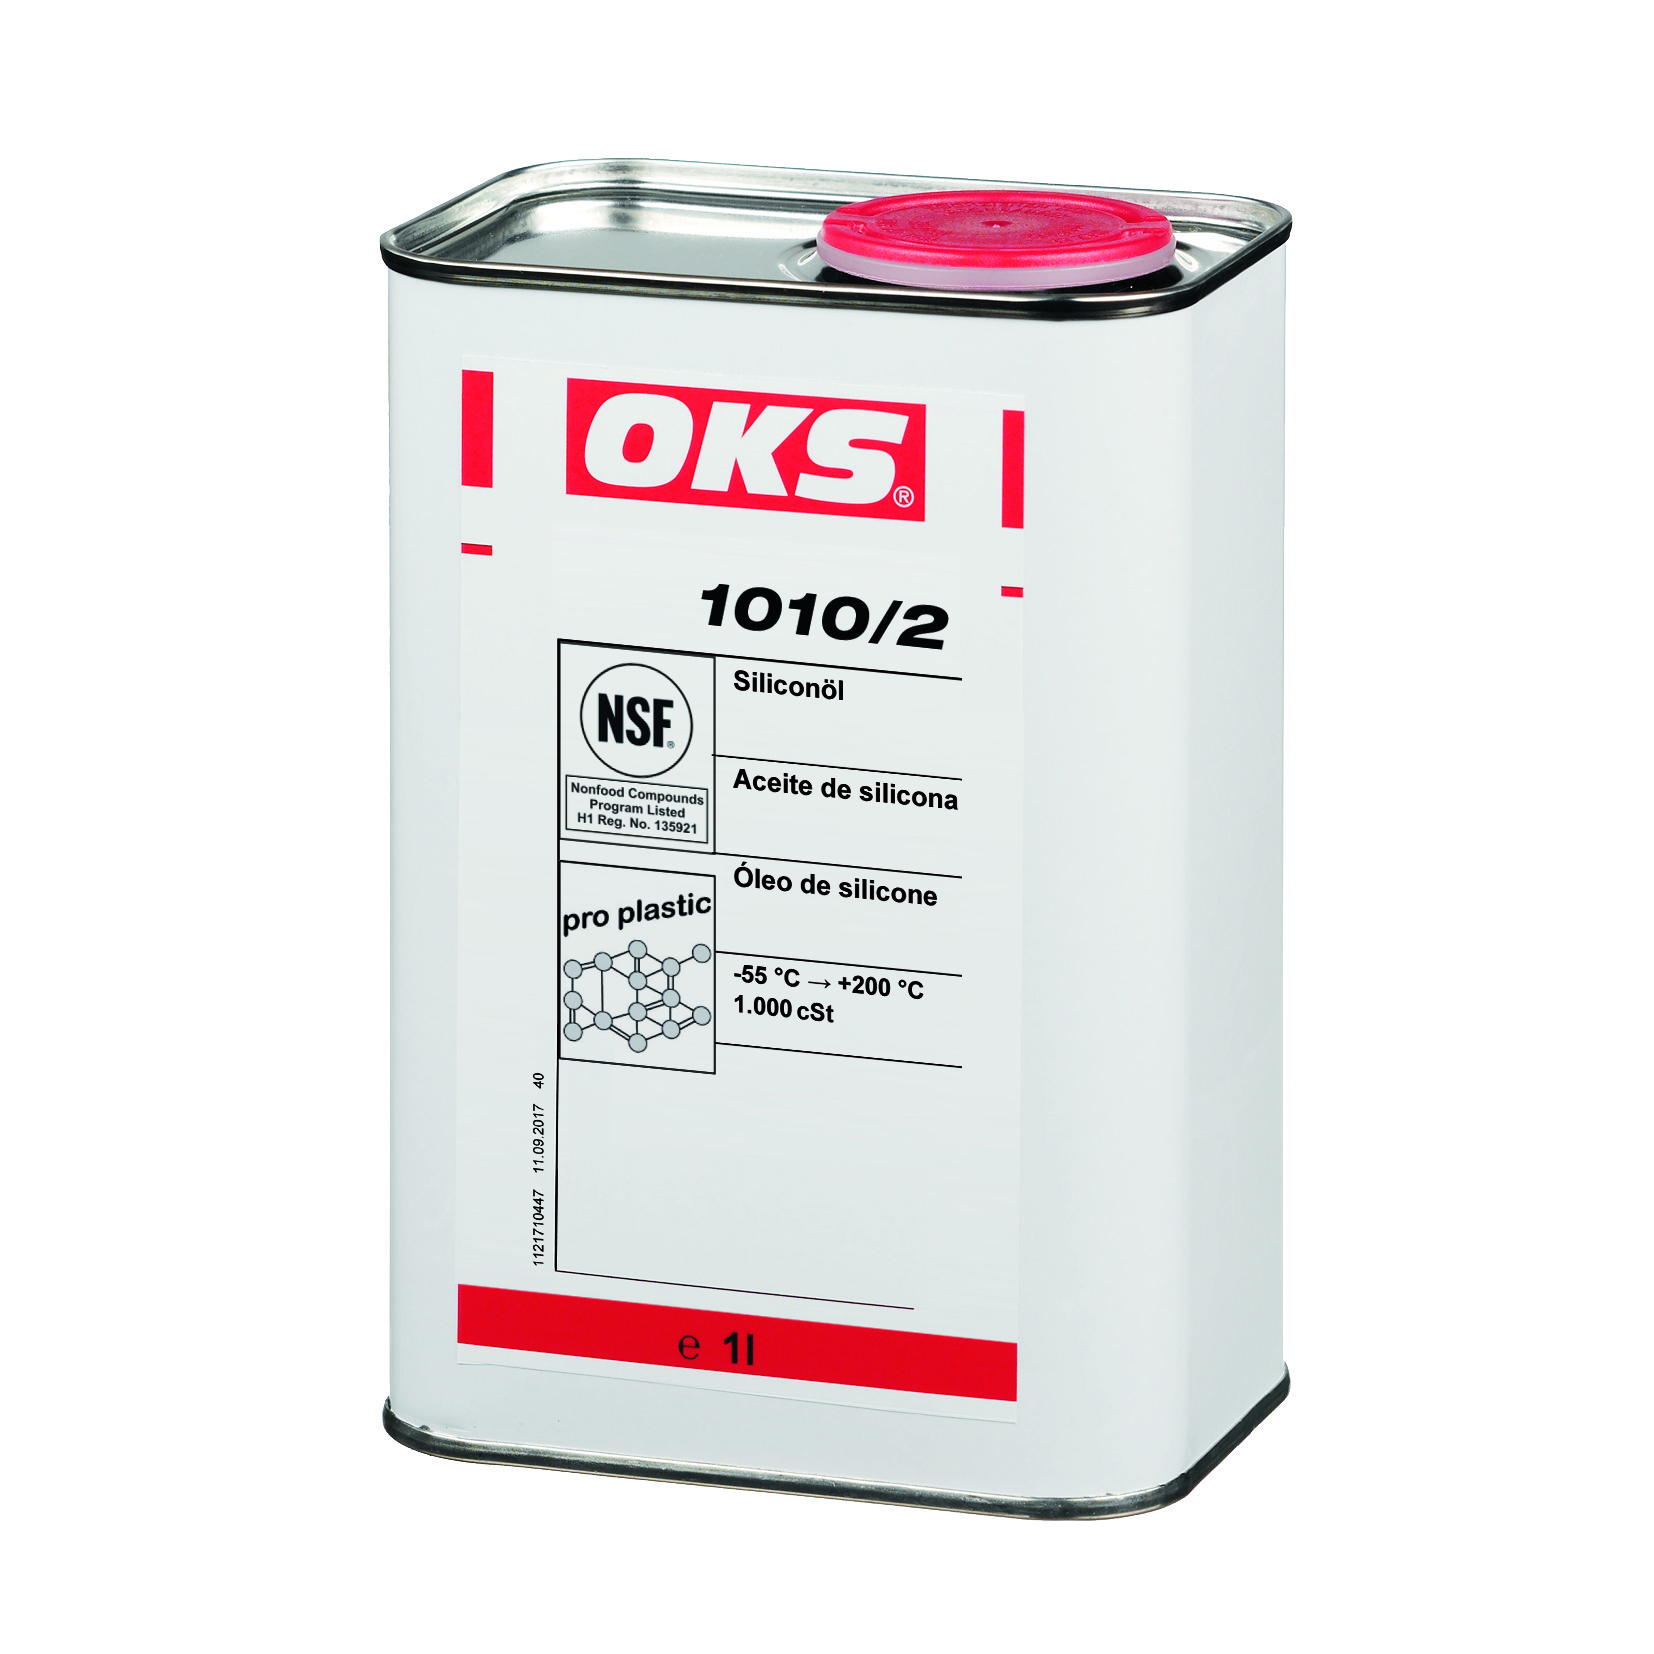 OKS 1010/2 siliconenolie